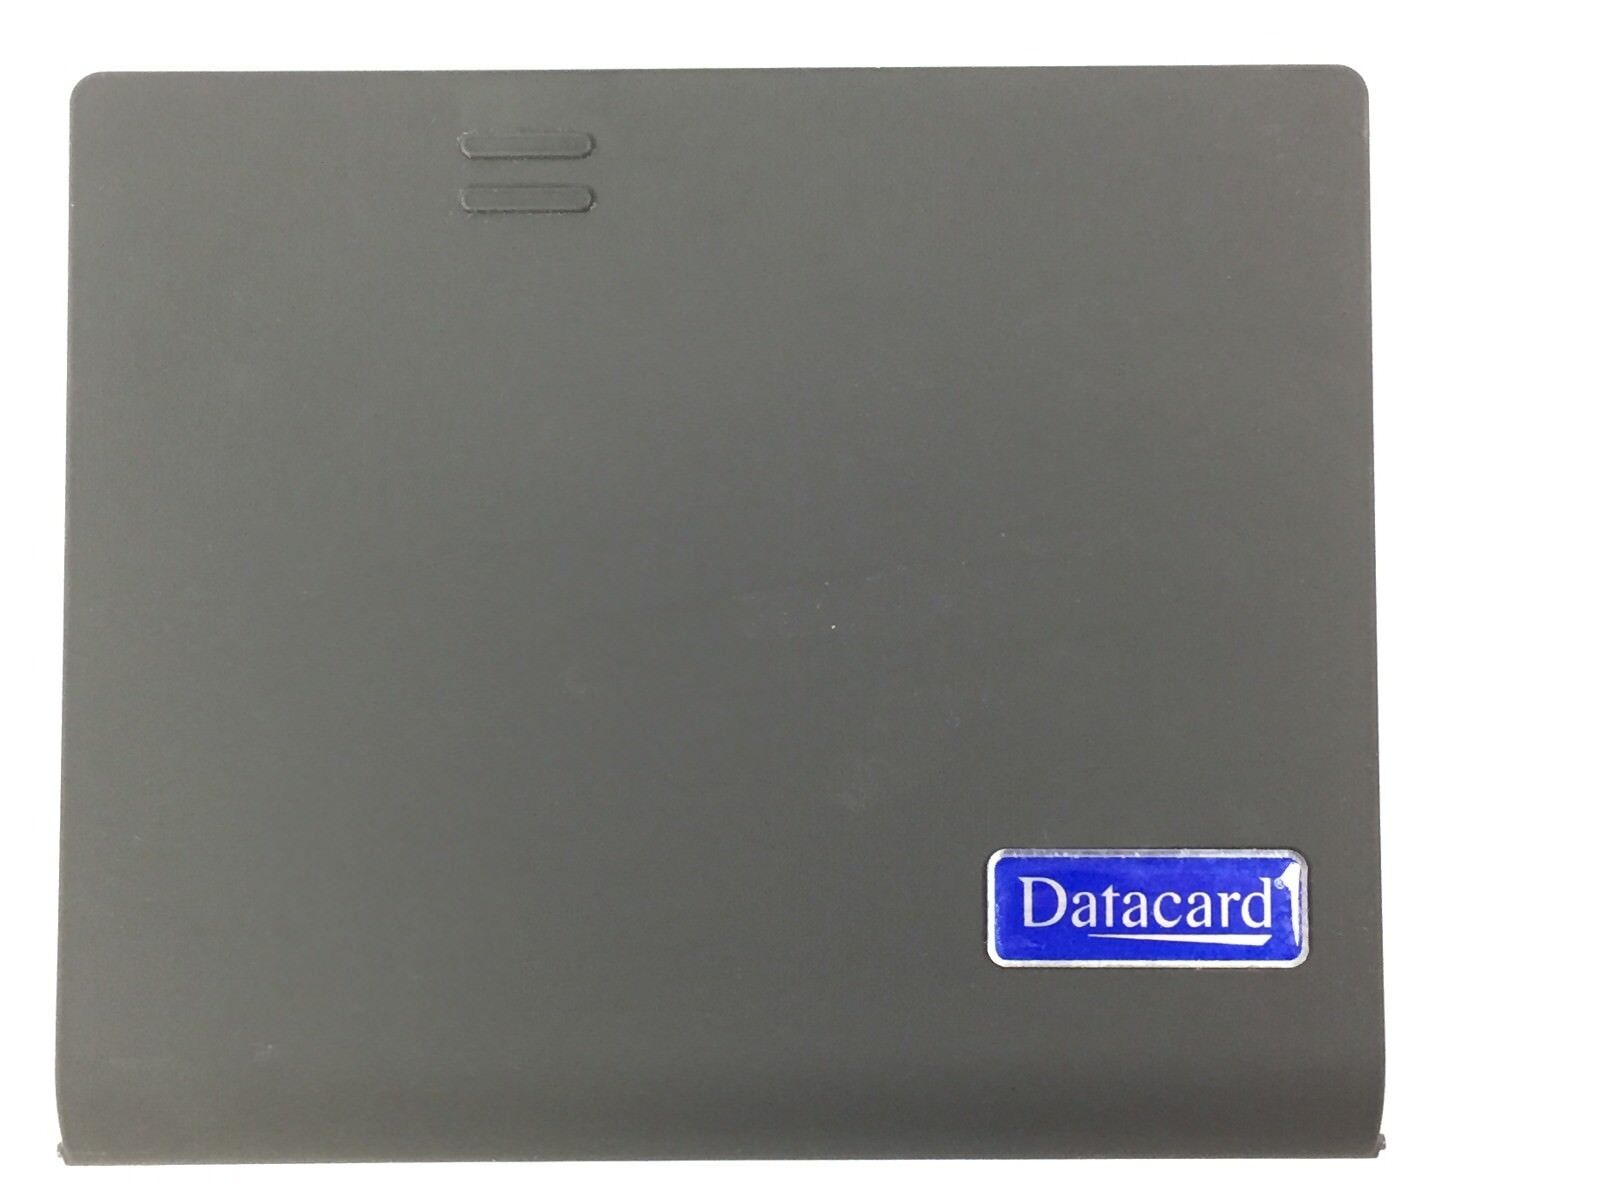 DataCard Dynamic CardWizard FCP 20/20 Front Door "DataCard" Logo